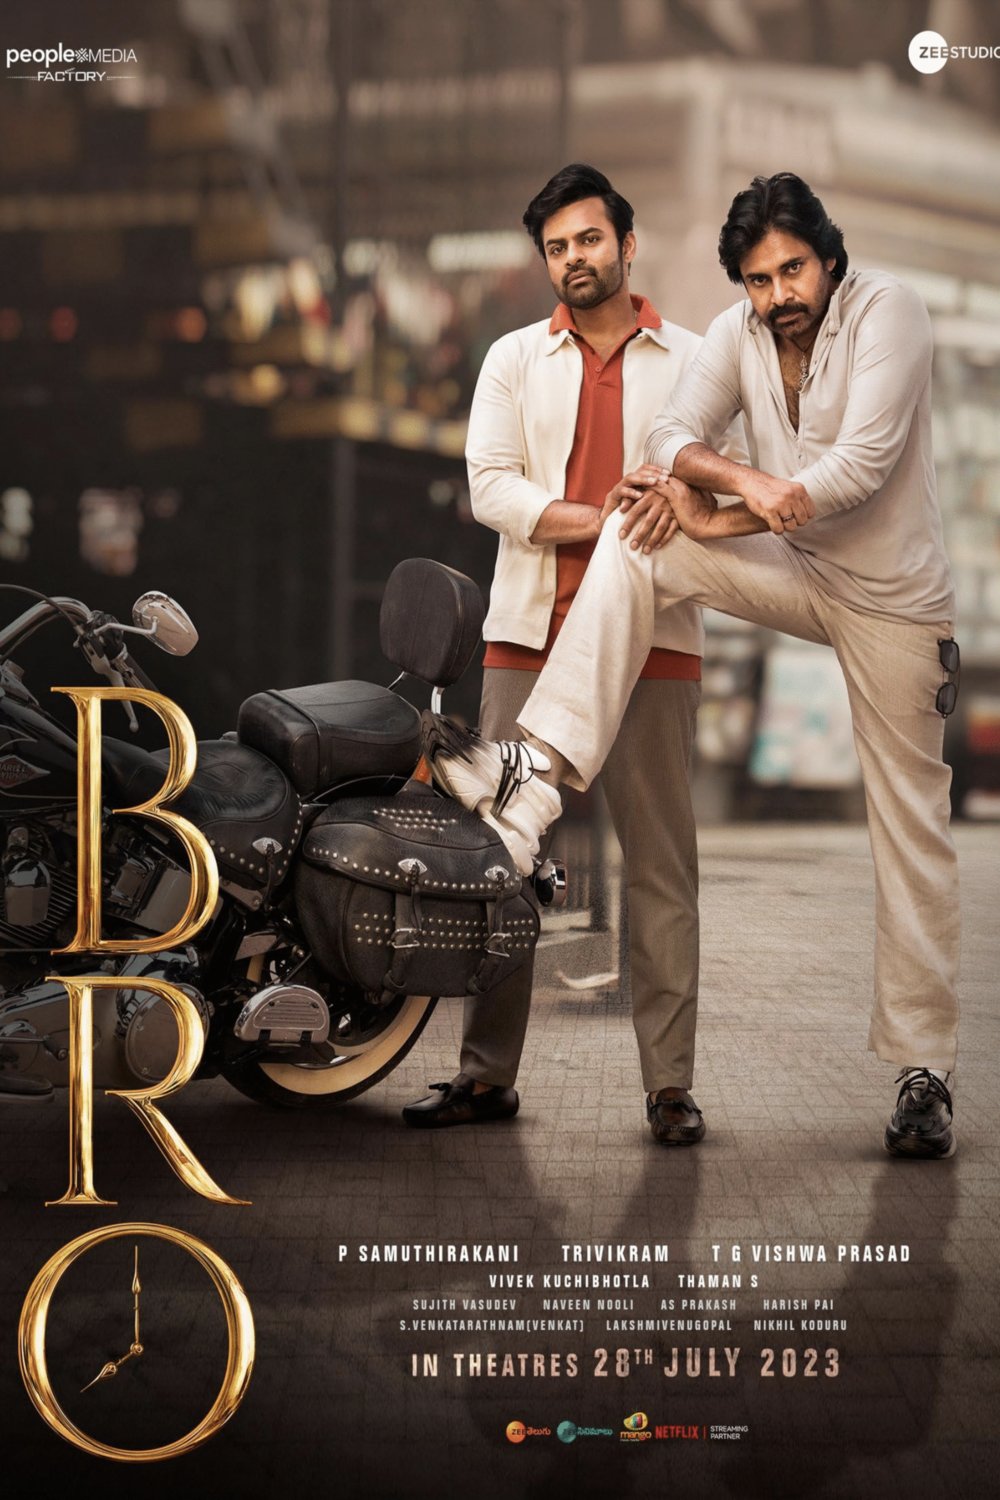 Telugu poster of the movie Bro